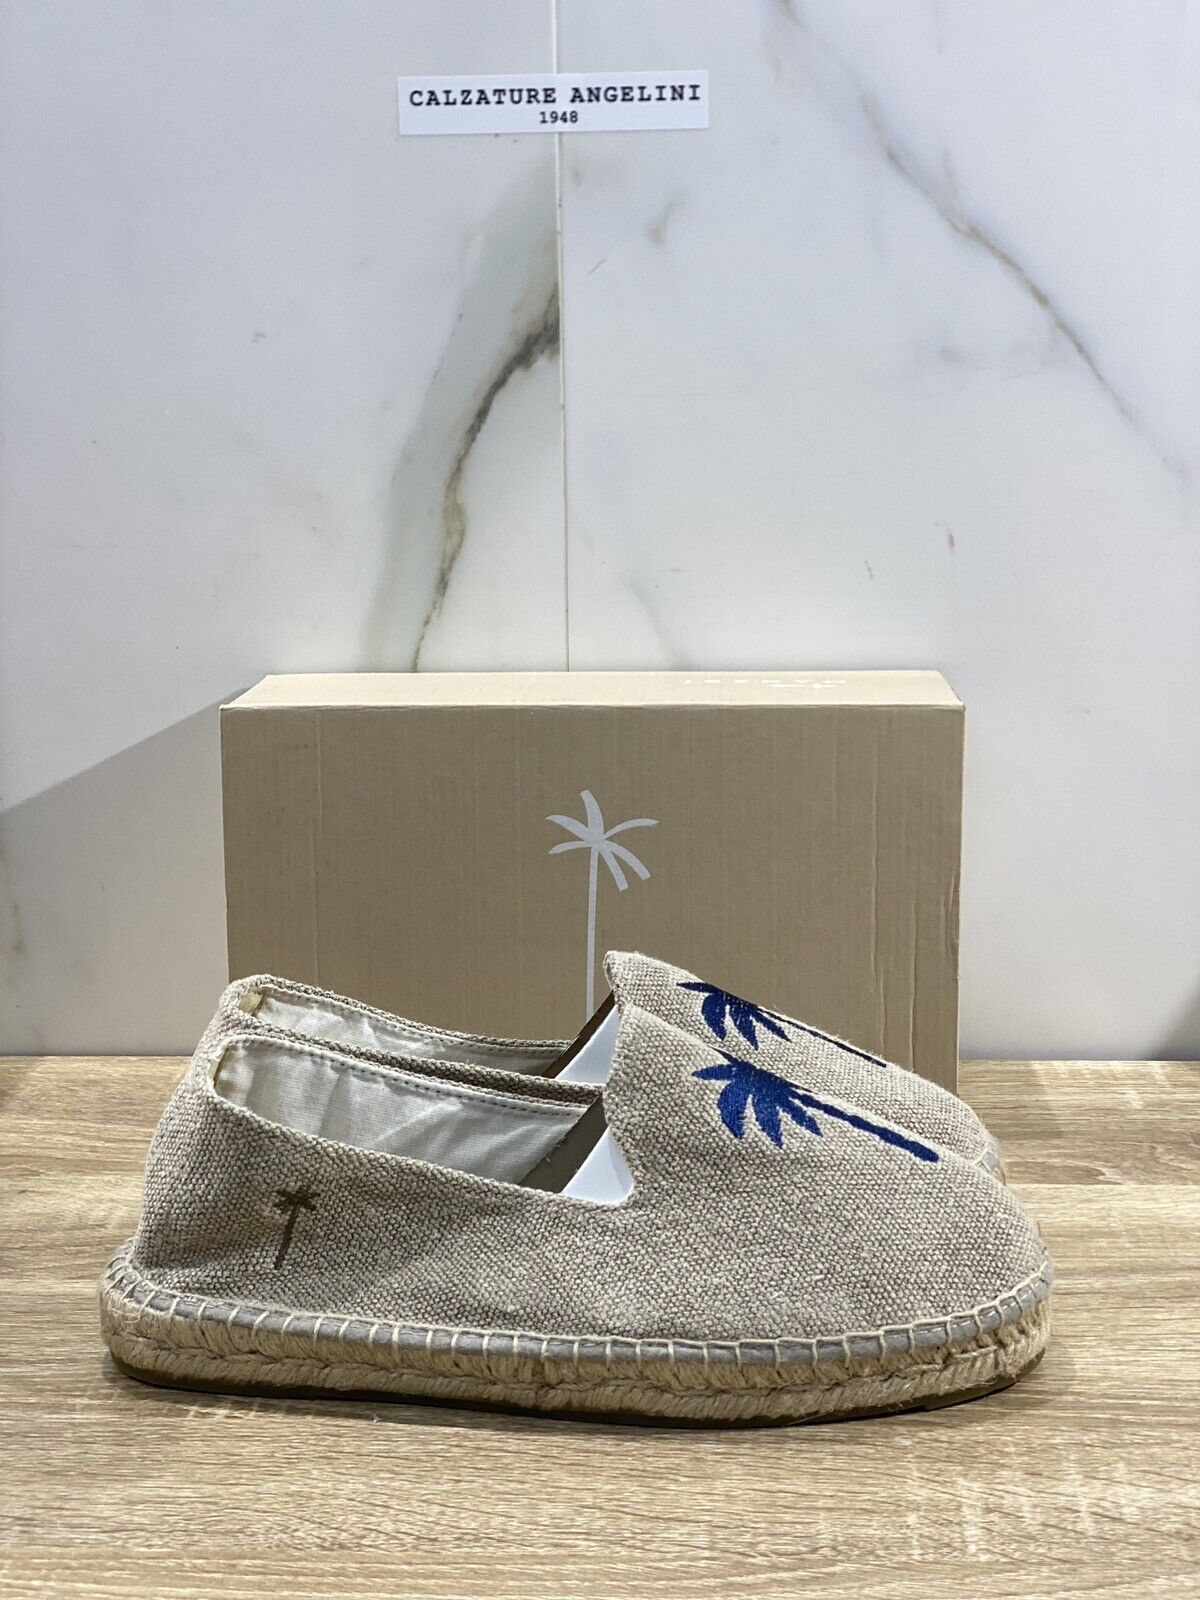 Manebi’ Uomo Espadrilles Mocassino Sand Casual Summer Shoes 40